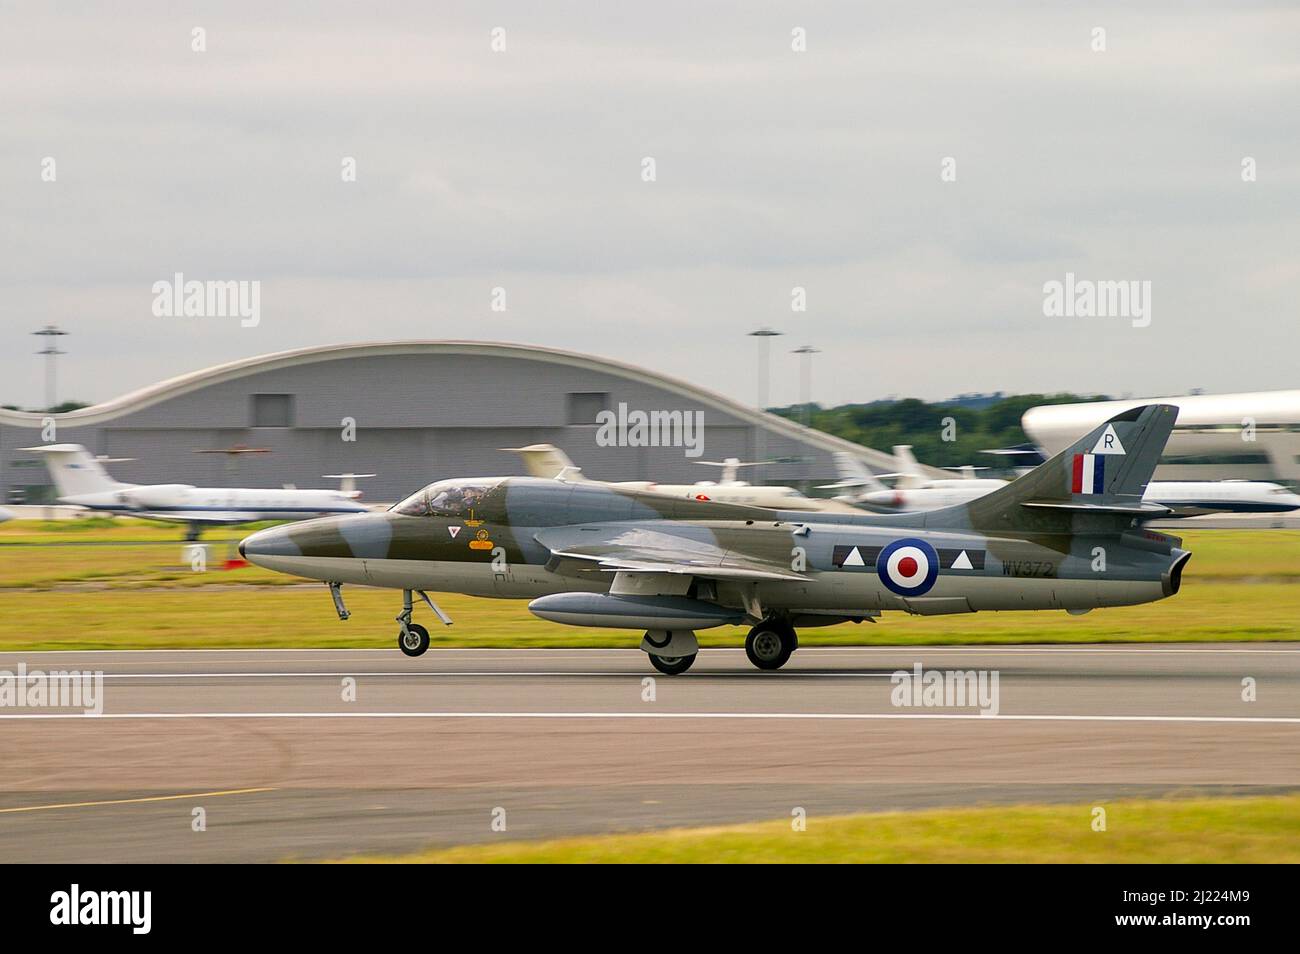 Hawker Hunter WV372, G-BXFI, Vintage-Düsenflugzeug, das während der Flugshow am Flughafen Farnborough gestartet wird. Klassischer Düsenjäger, früher mit RAF Stockfoto